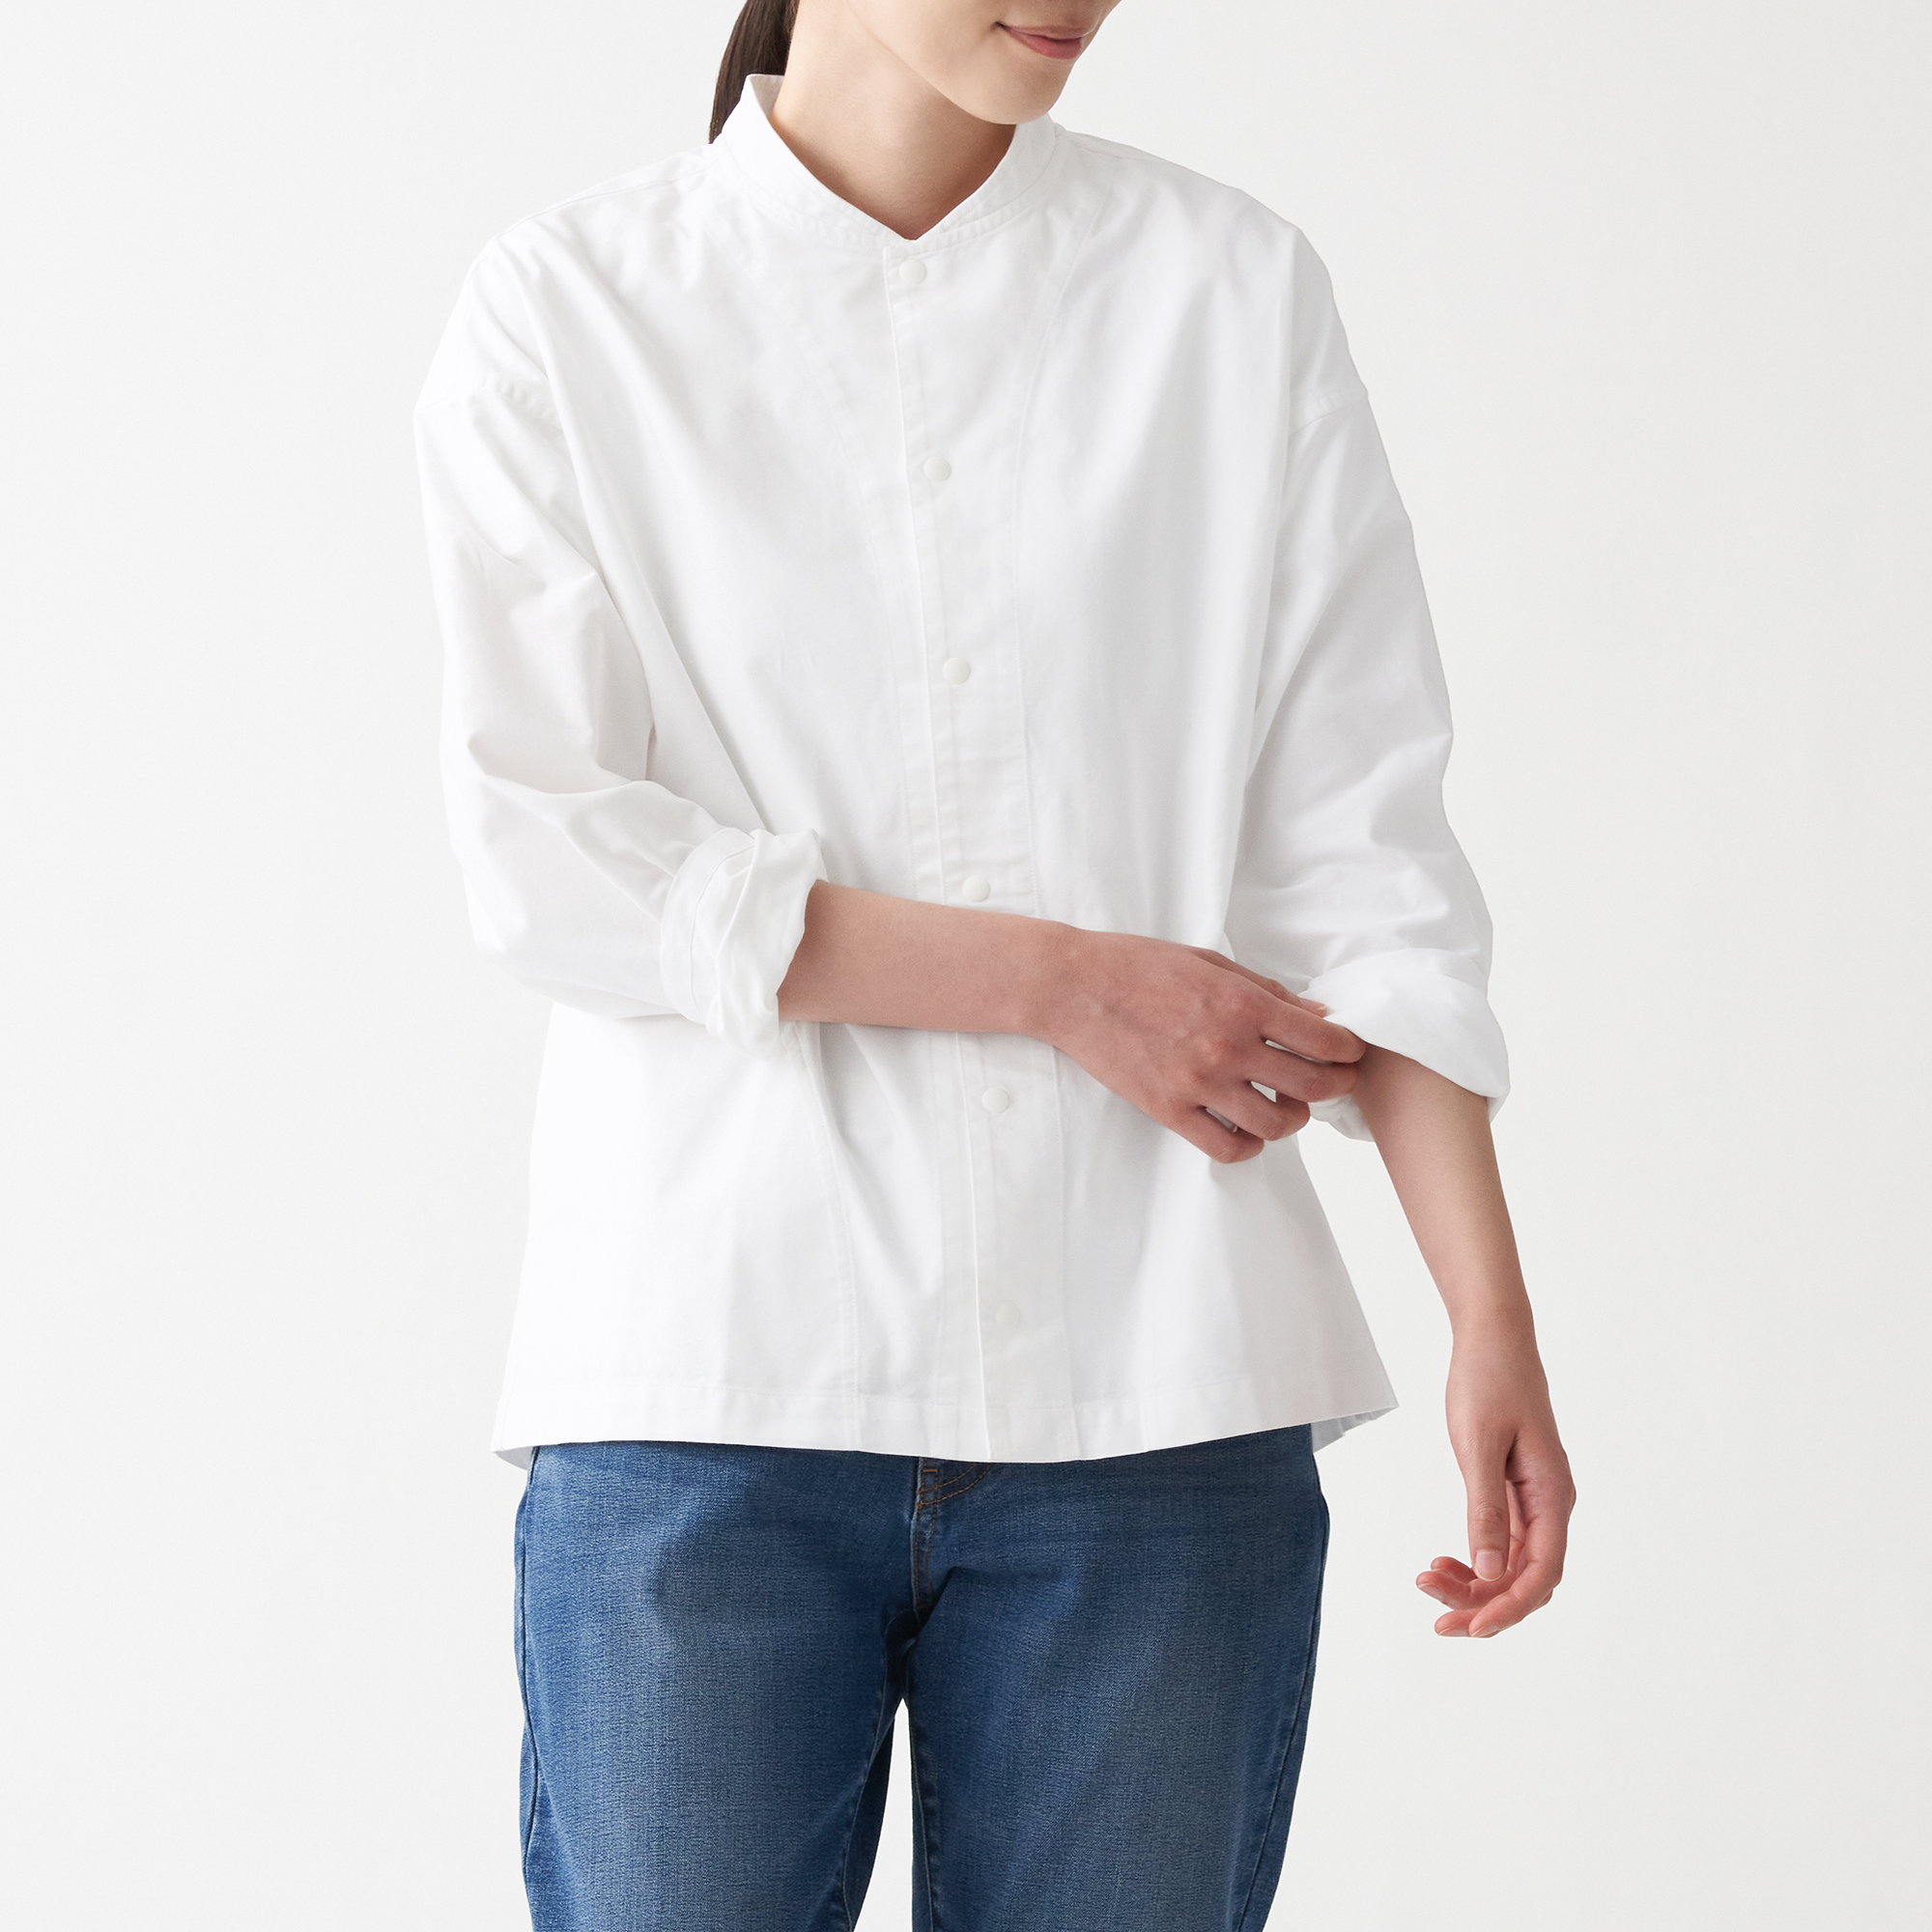 มูจิ เสื้อเชิ้ตผ้าออกซฟอร์ตฟอก ปกตั้ง Unisex - MUJI Washed Oxford Stand Collar Shirt สี ขาว ขนาด L|XL